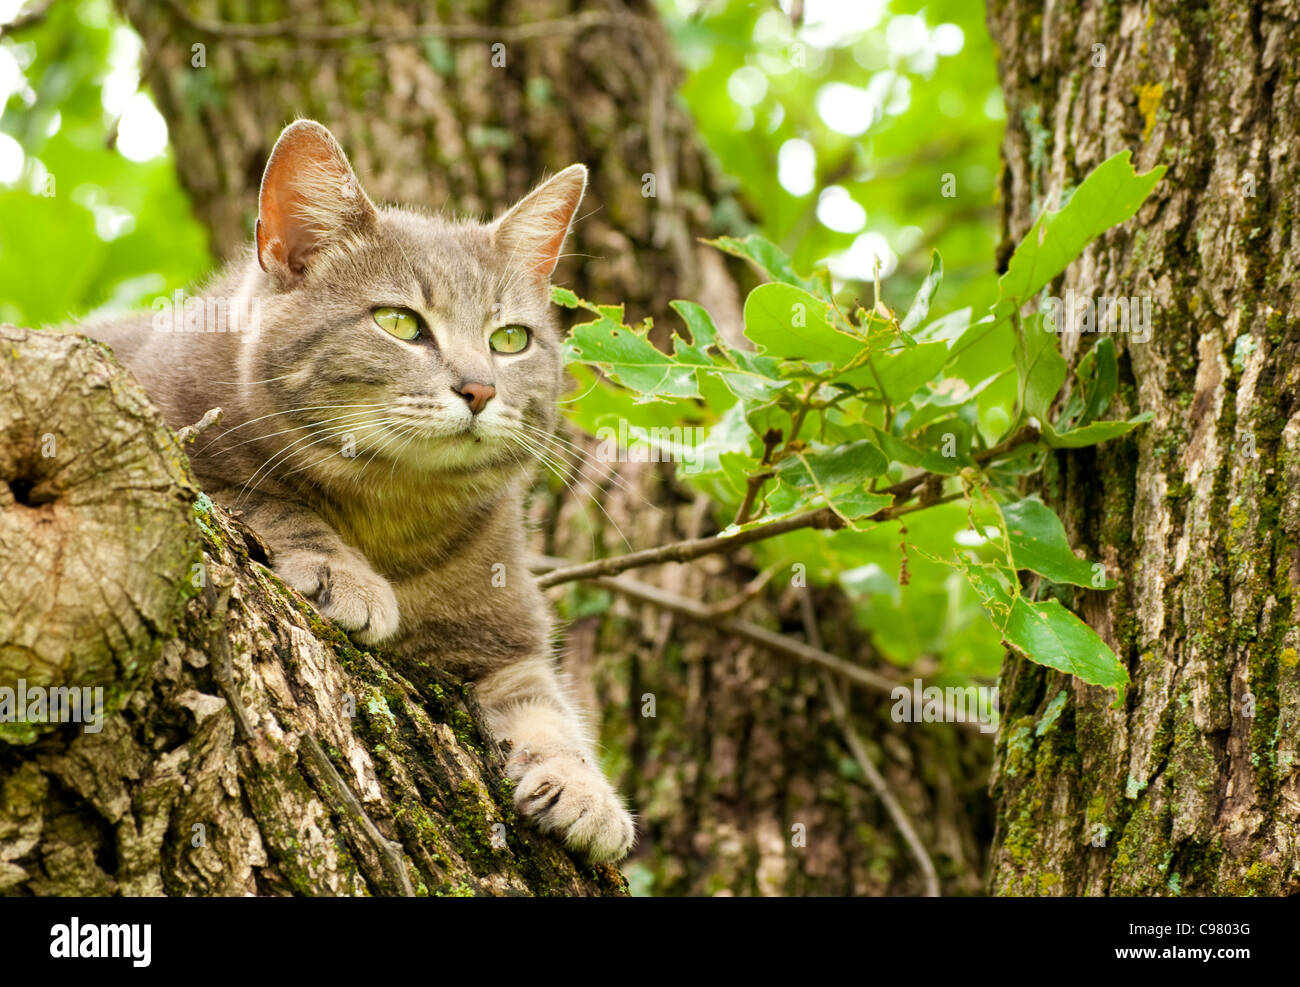 Blue tabby gatto con gli occhi verdi fino in una struttura ad albero Foto Stock